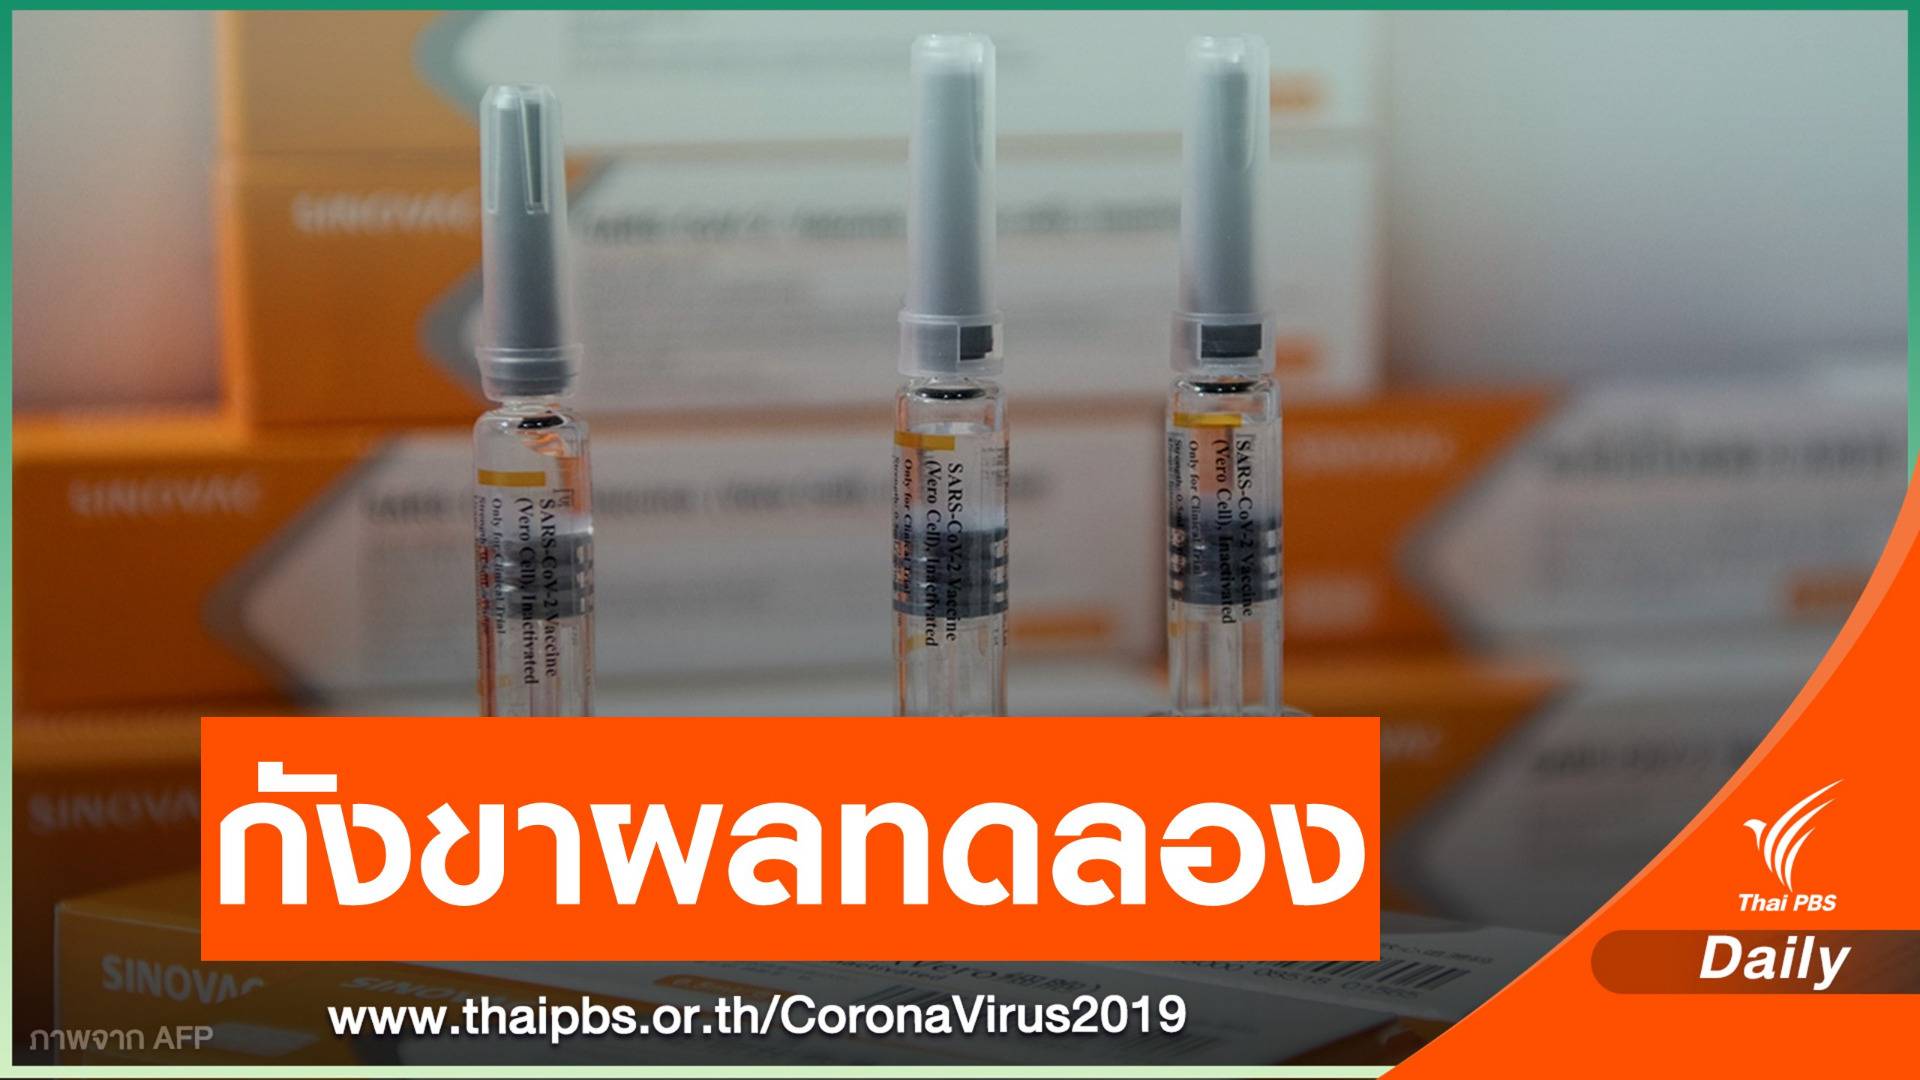 วัคซีน “Sinovac” ทดสอบ 3 ประเทศให้ผลต่างกัน